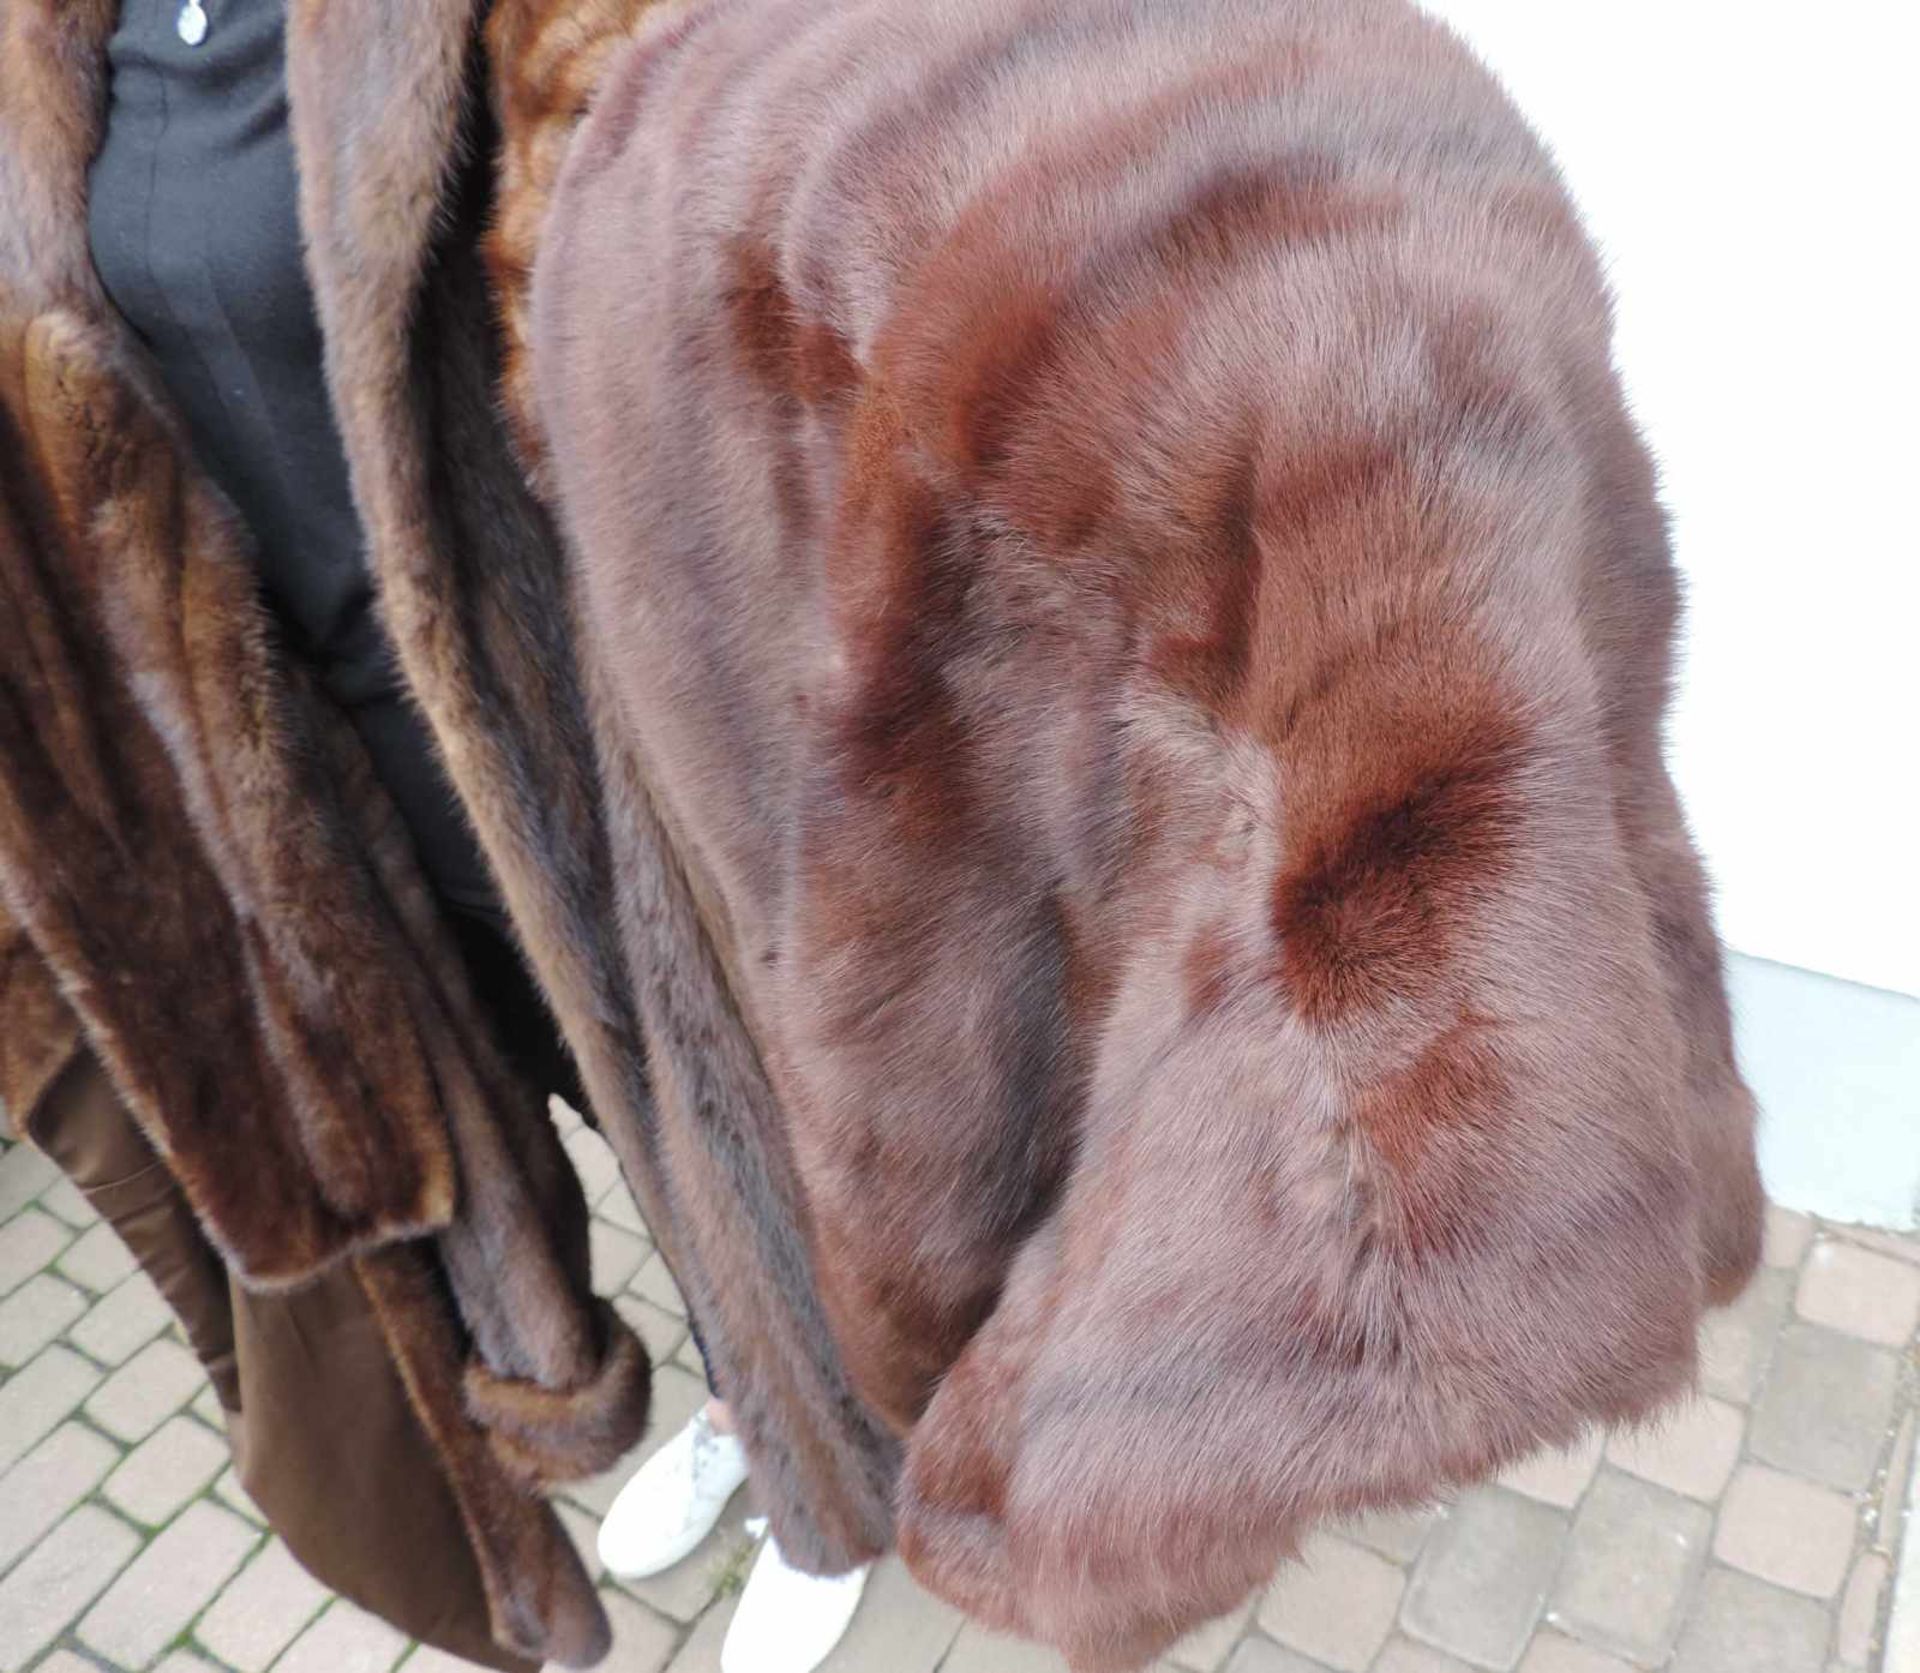 Nerzmantel, Nerzjacke, Nerzstola und Nerz Schaal. Konfektionsgröße circa 38. Mink coat, mink jacket, - Bild 4 aus 6